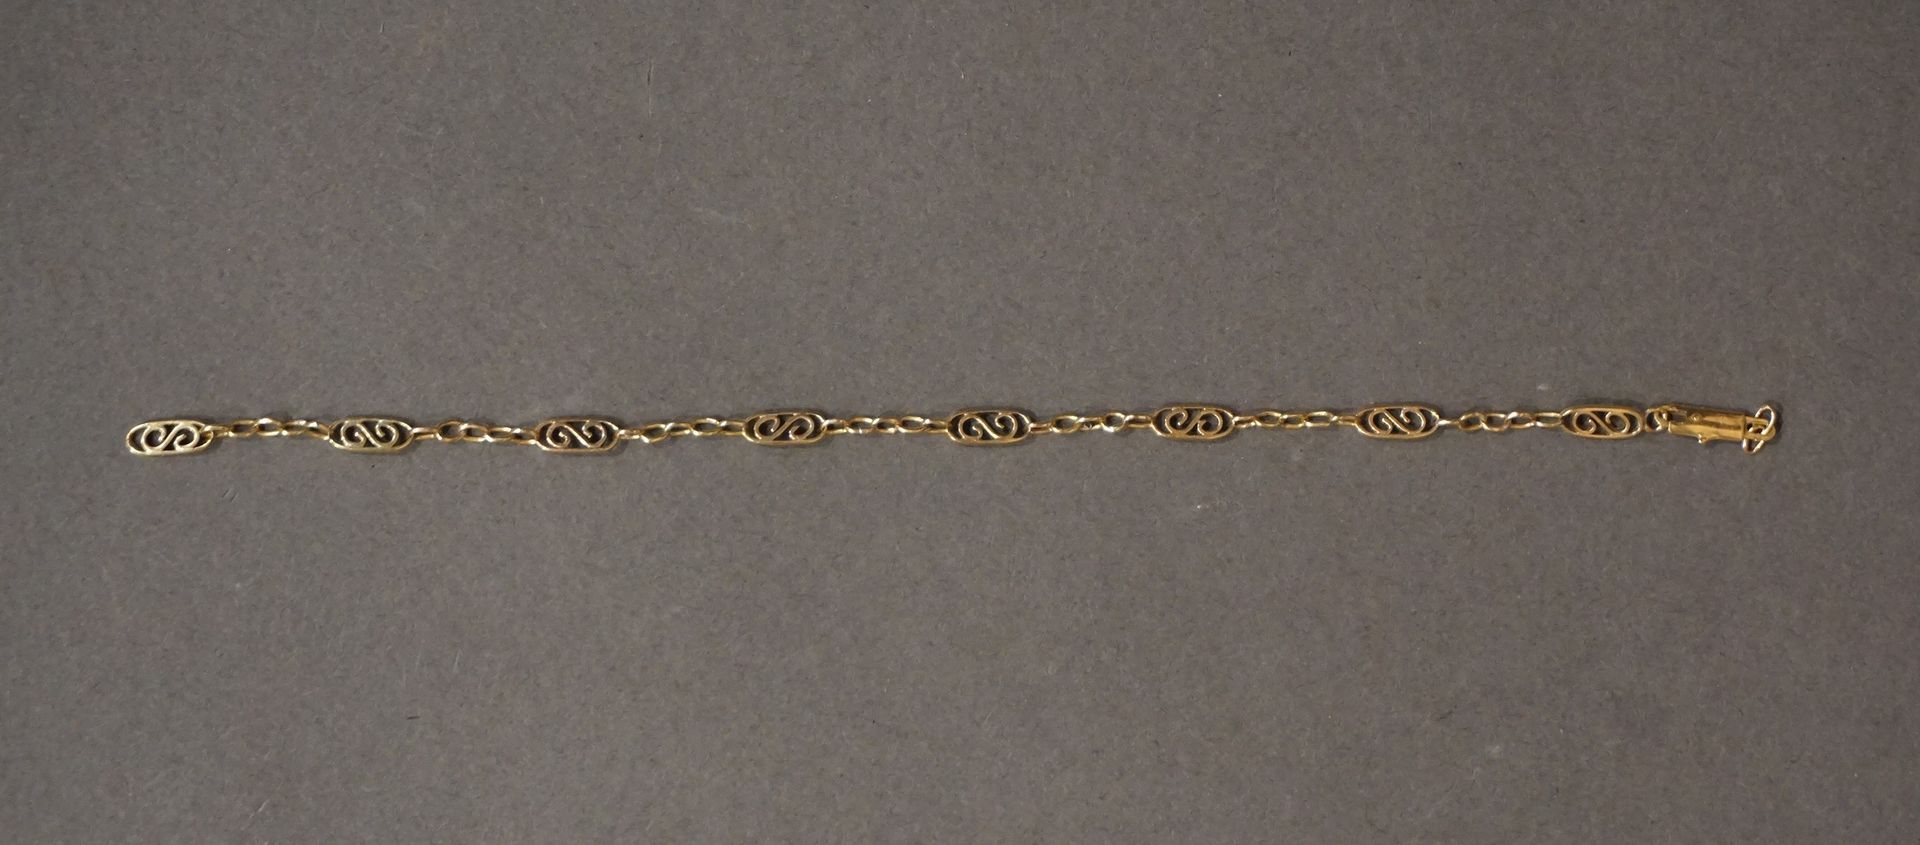 Bracelet Pulsera de oro con ocho elementos calados (rotos) (3,6 grs), (L: 19 cm)